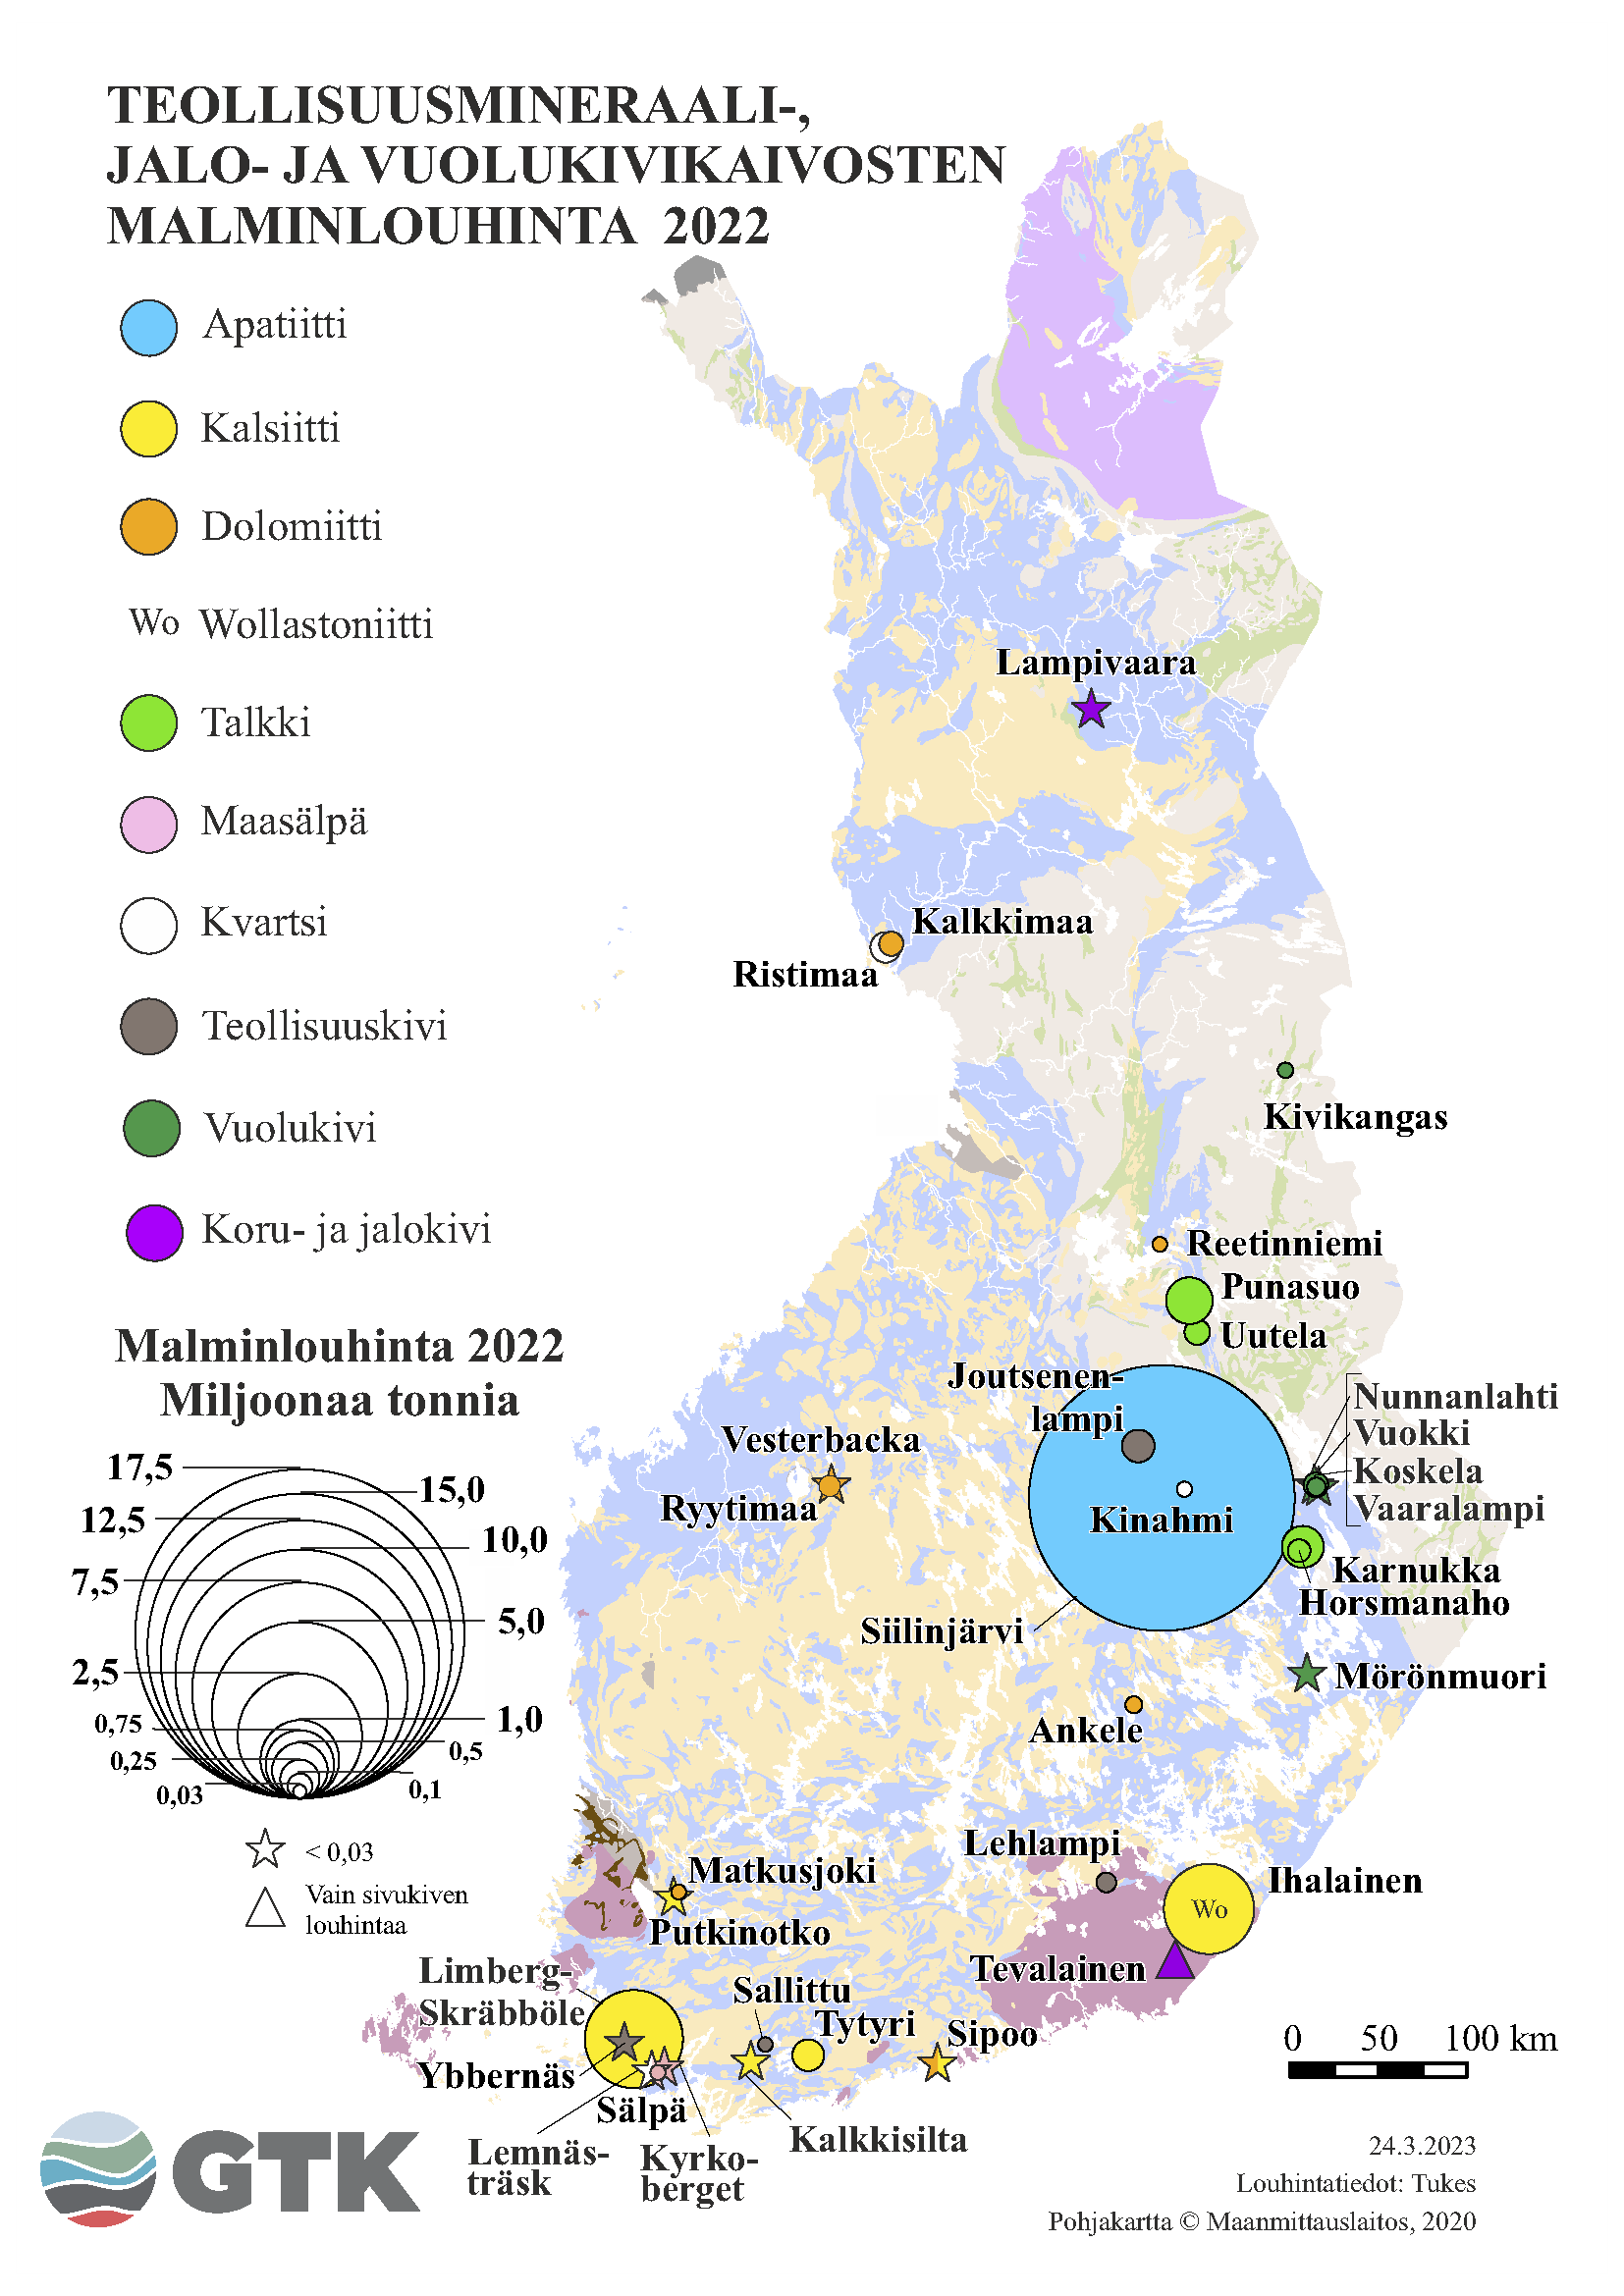 Suomen kartta, johon on merkattu teollisuusmineraali-, jalo- ja vuolukivikaivosten malminlouhinta vuonna 2022